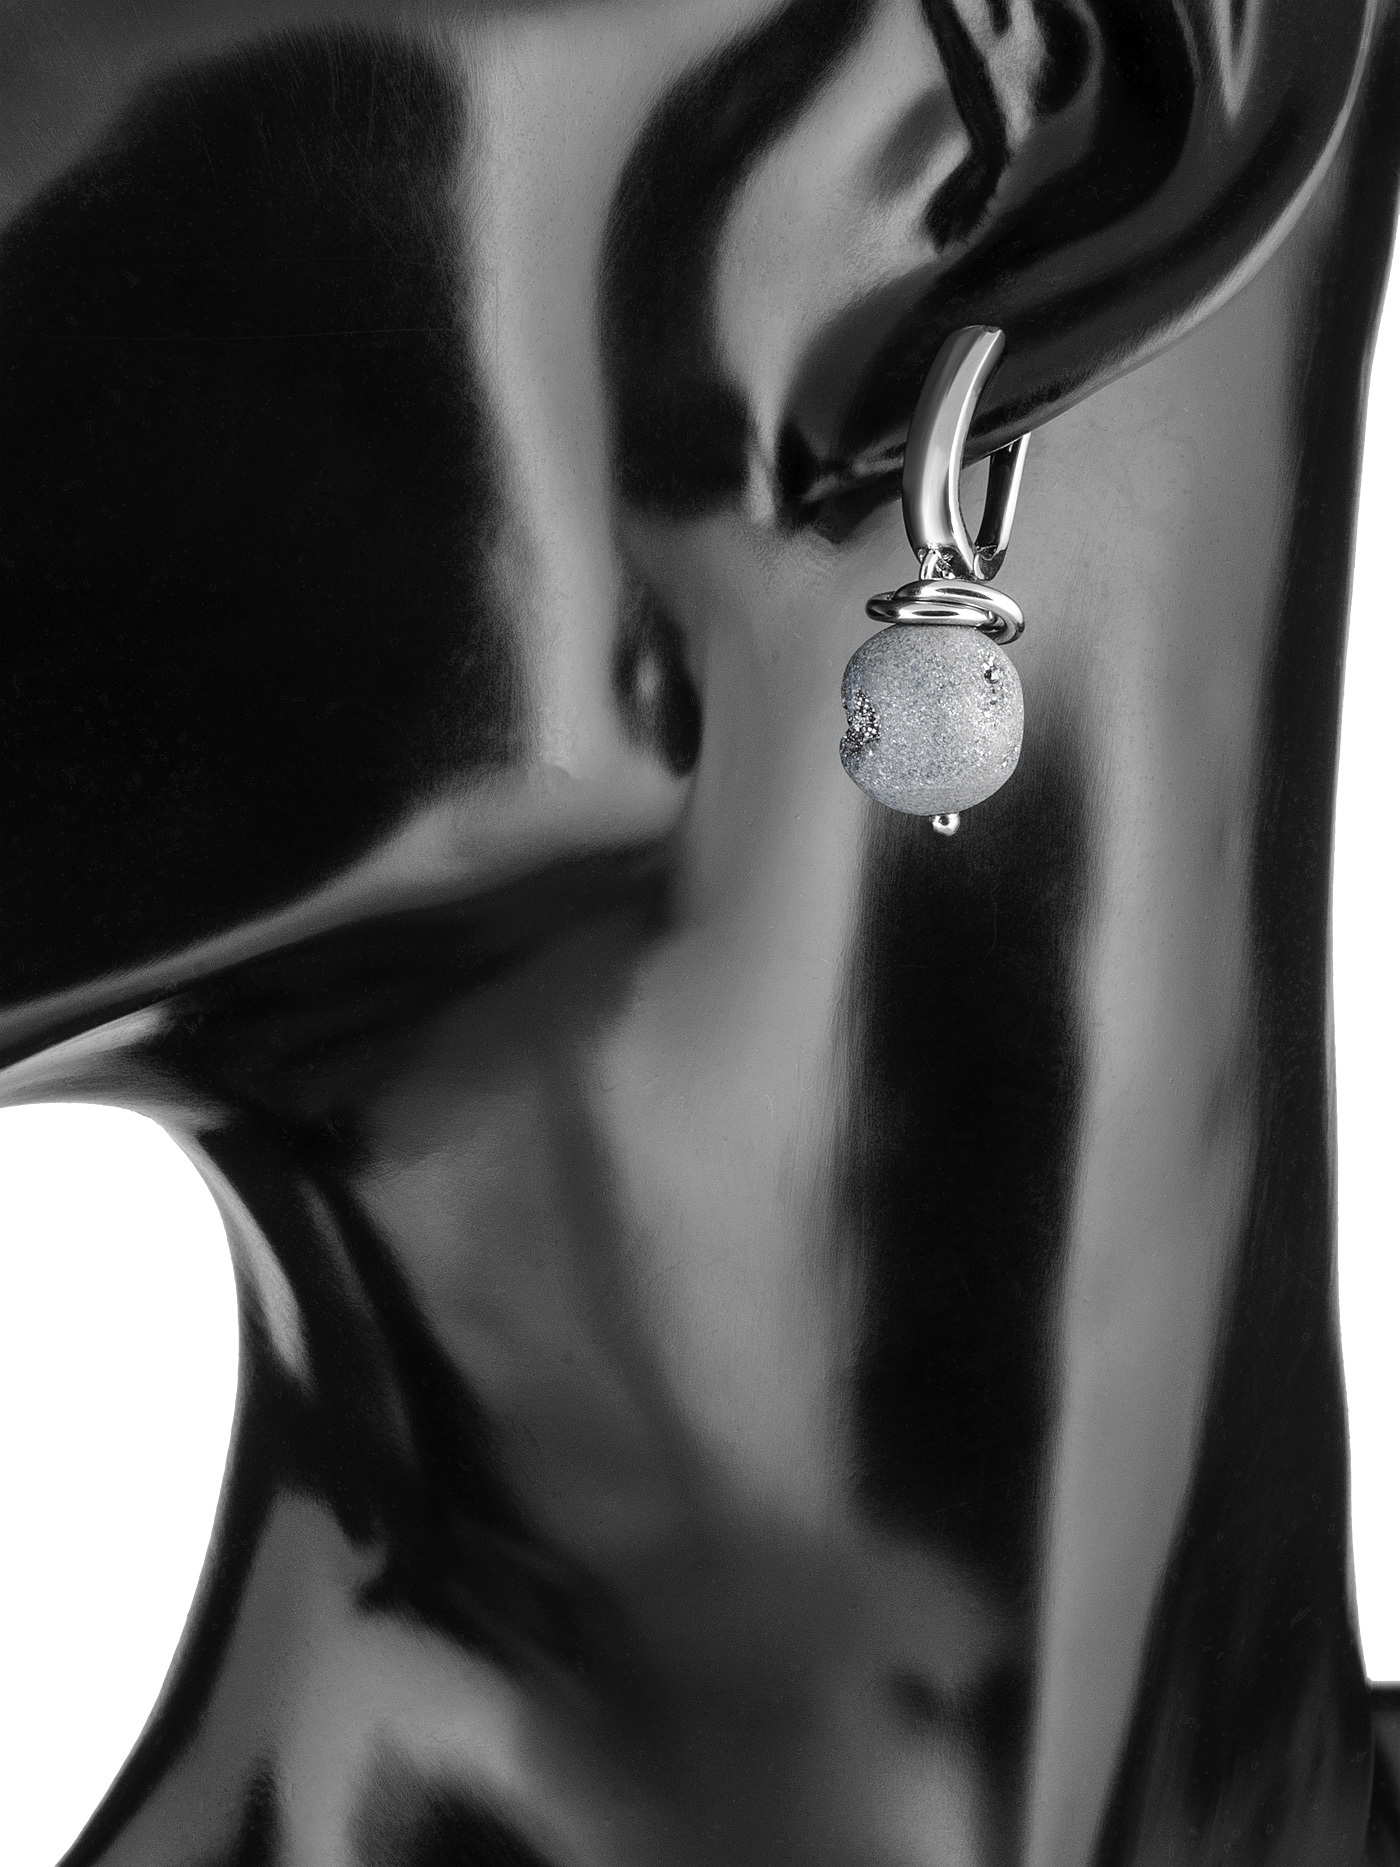 Асимметричные непарные дизайнерские серьги с натуральными камнями - серым агатом